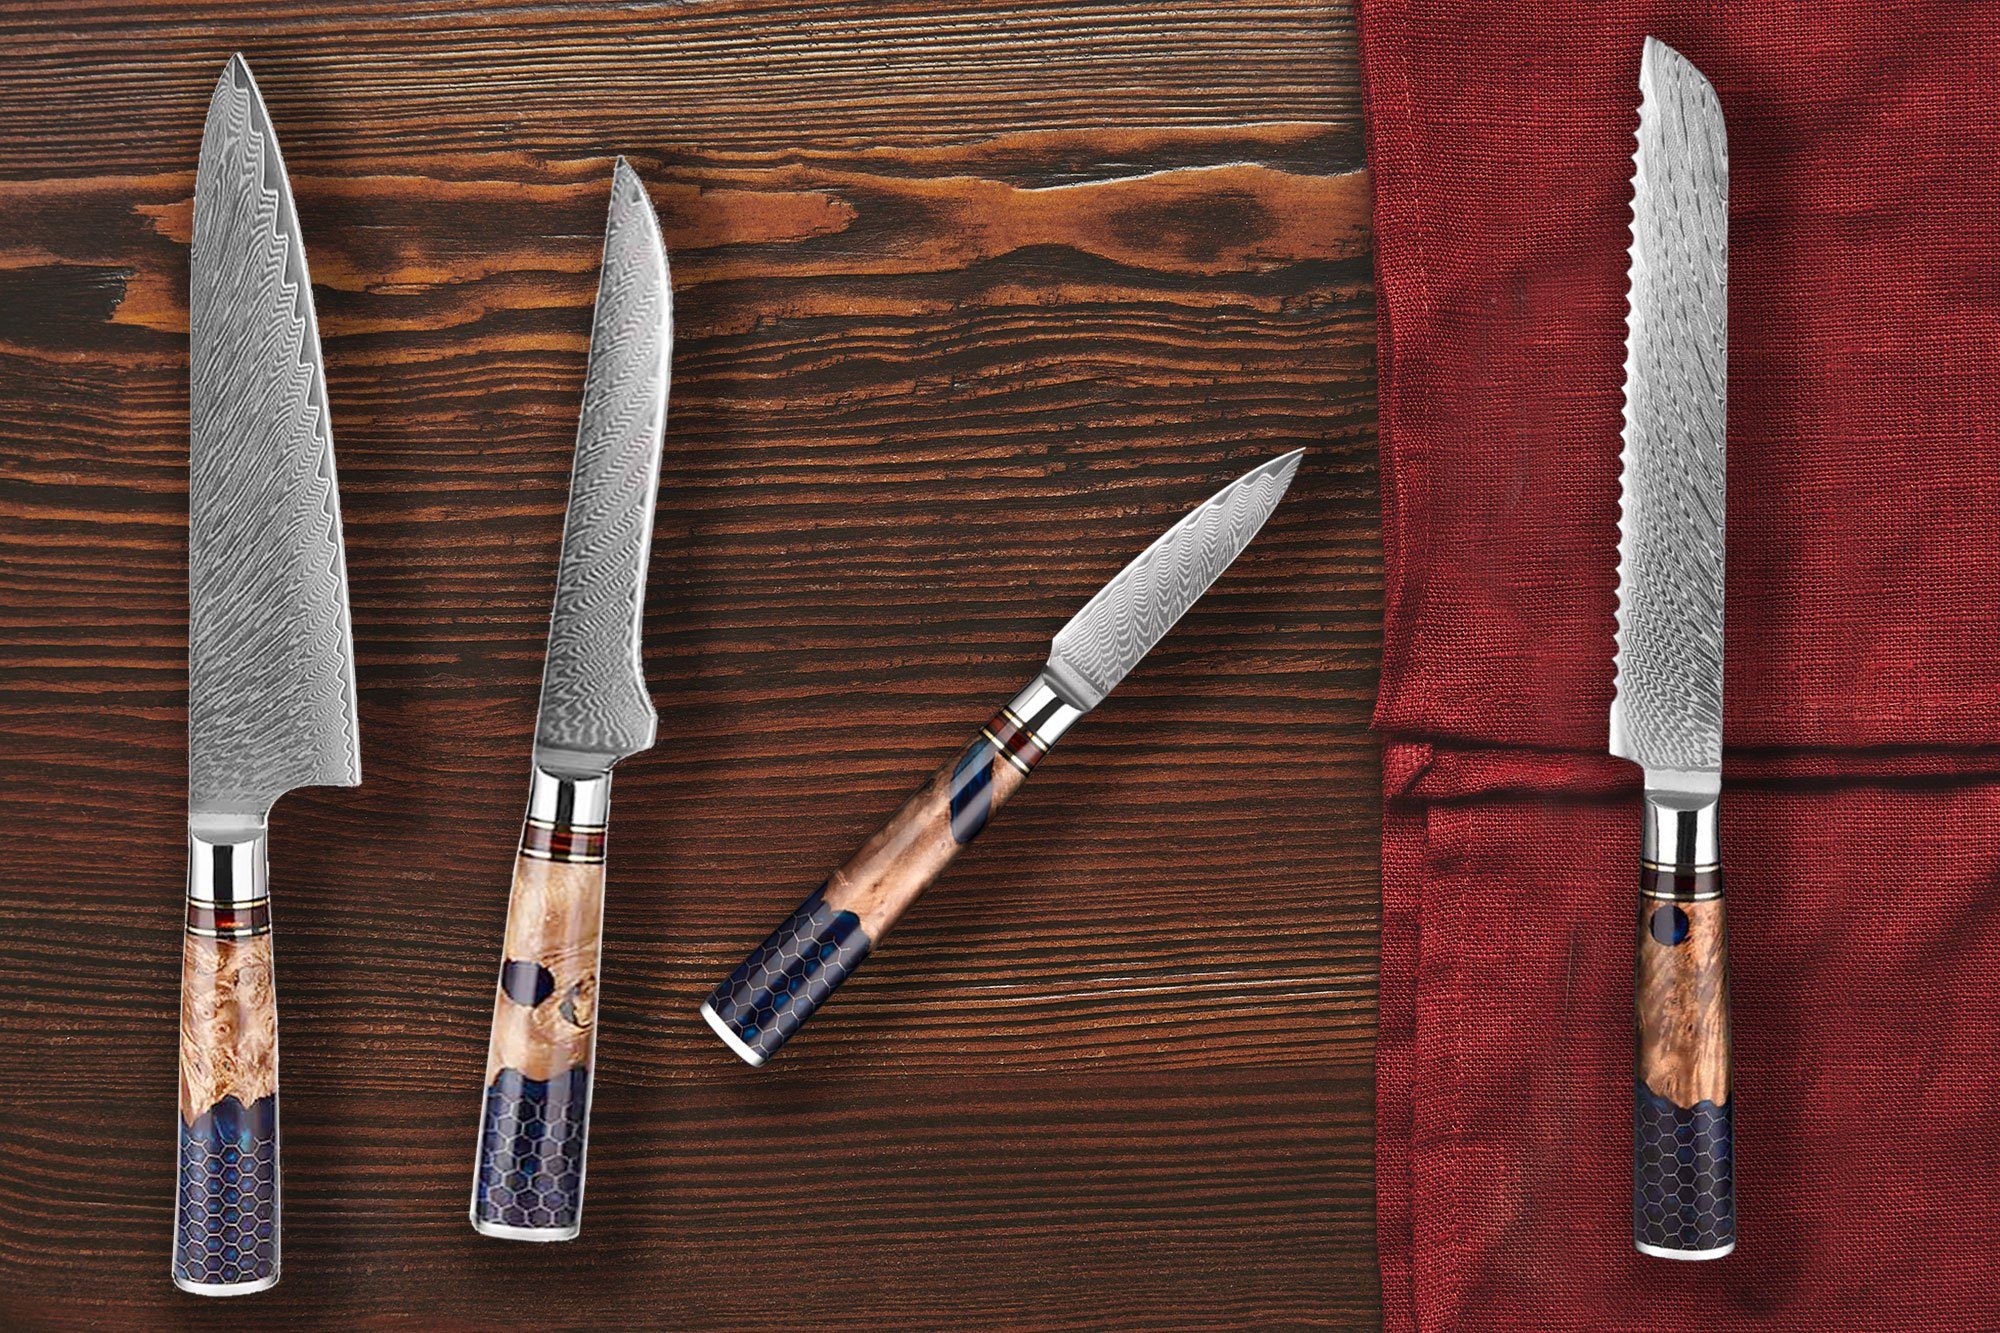 Muxel Damastmesser 4-Teiliges Damast Messer Set. Kochmesser Brotmesser Ausbeinmesser, Jedes Messer ein Unikat